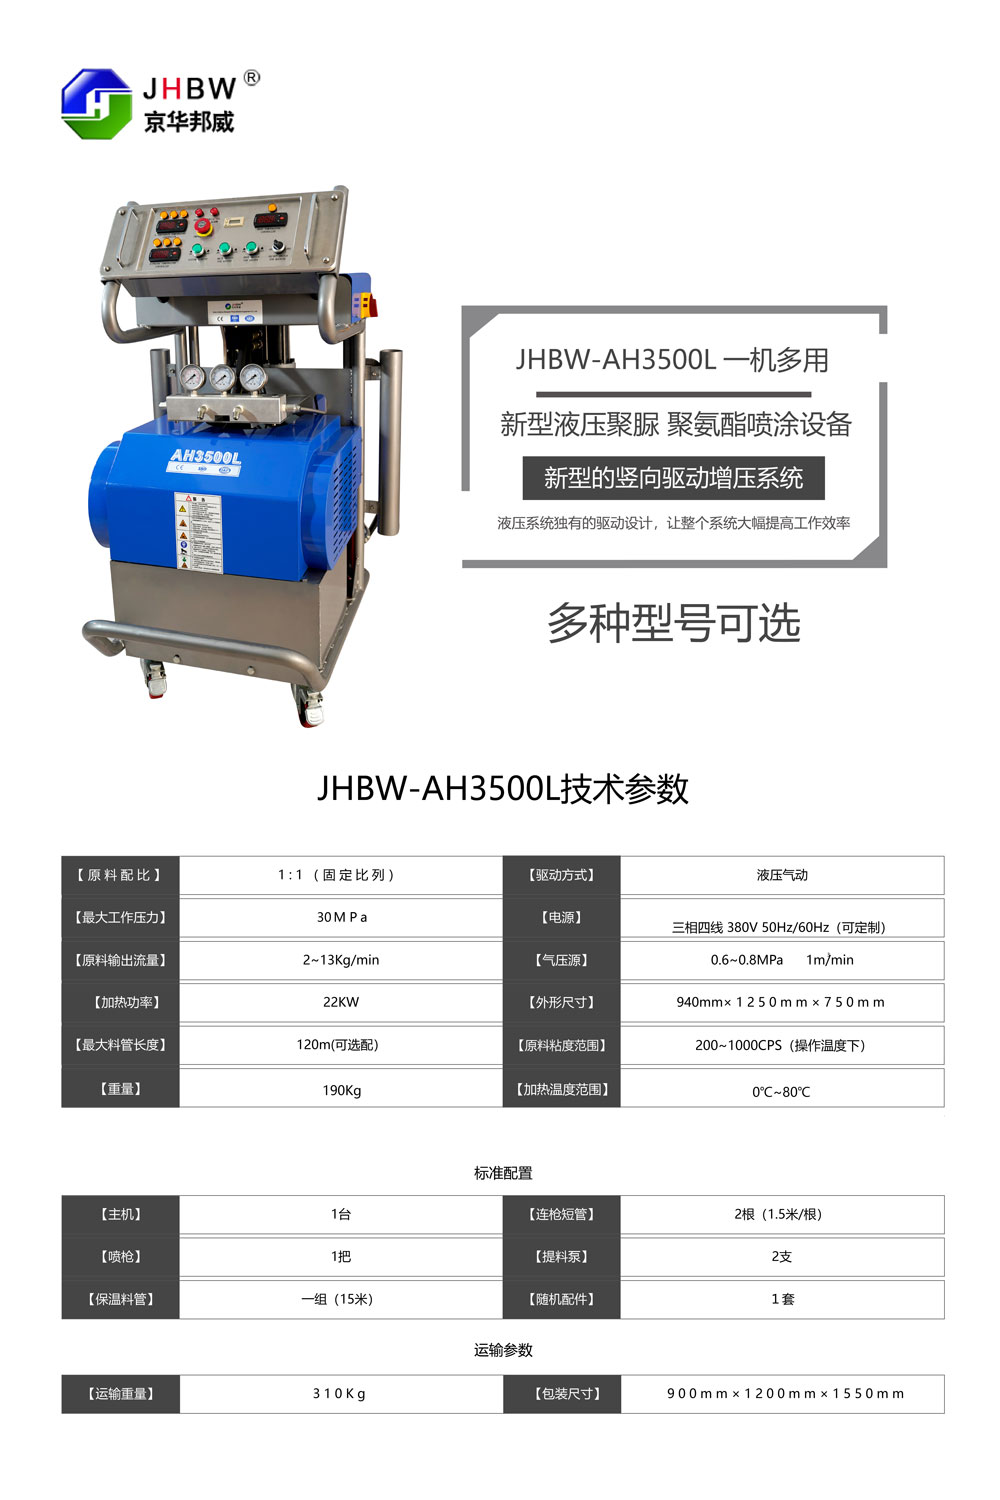 JHBW-AH3500L聚氨酯喷涂设备